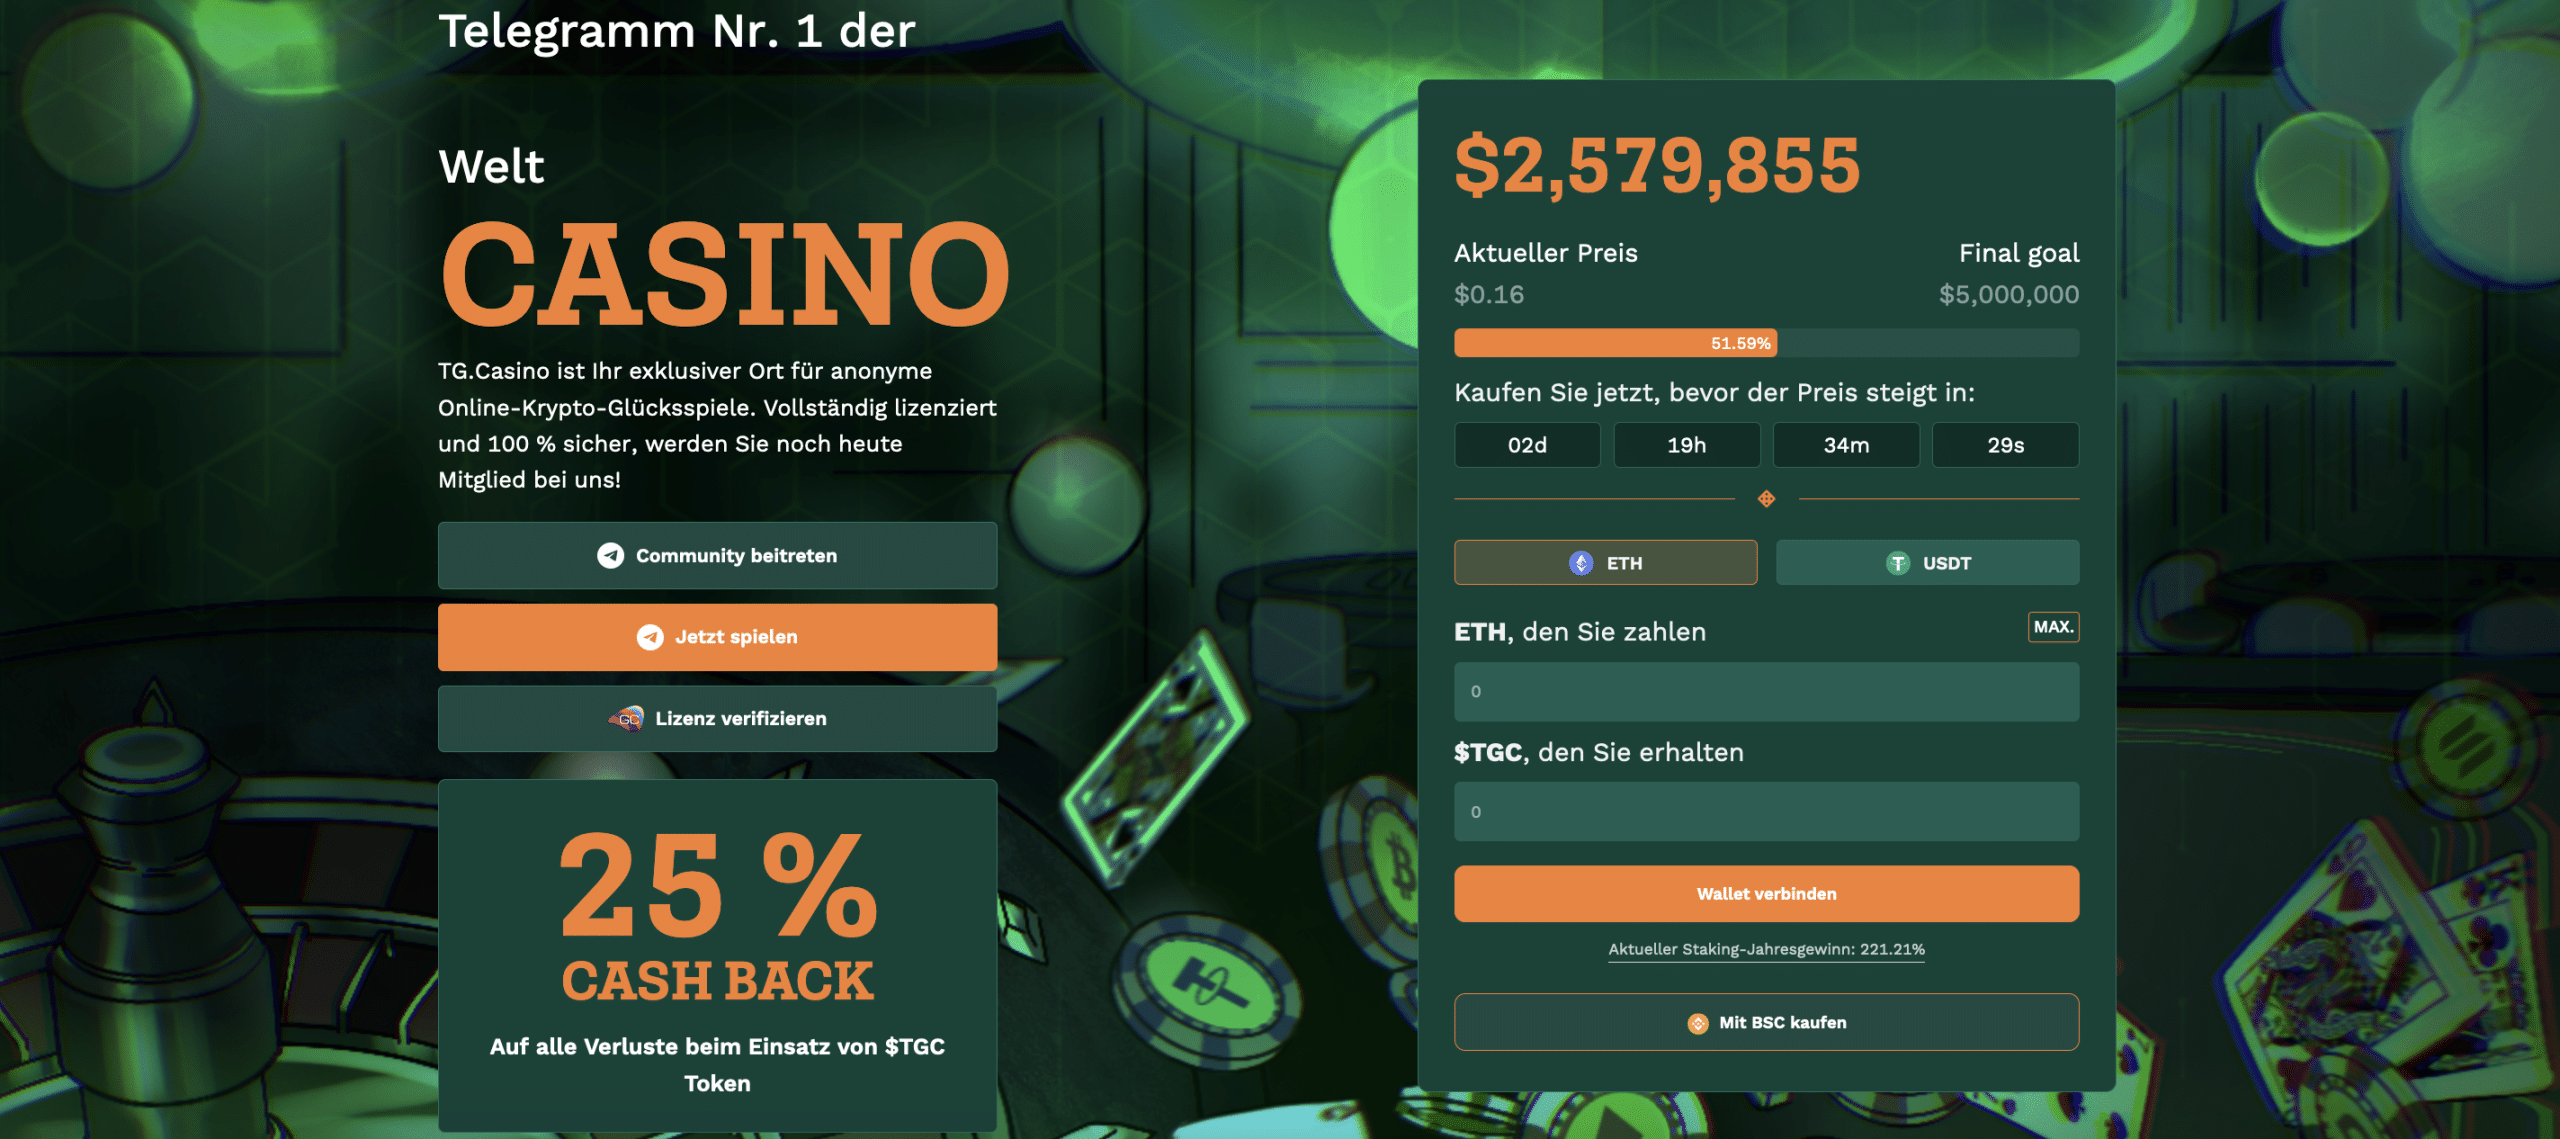 TG.Casino nimmt im PreSale über 2,5 Millionen Dollar ein